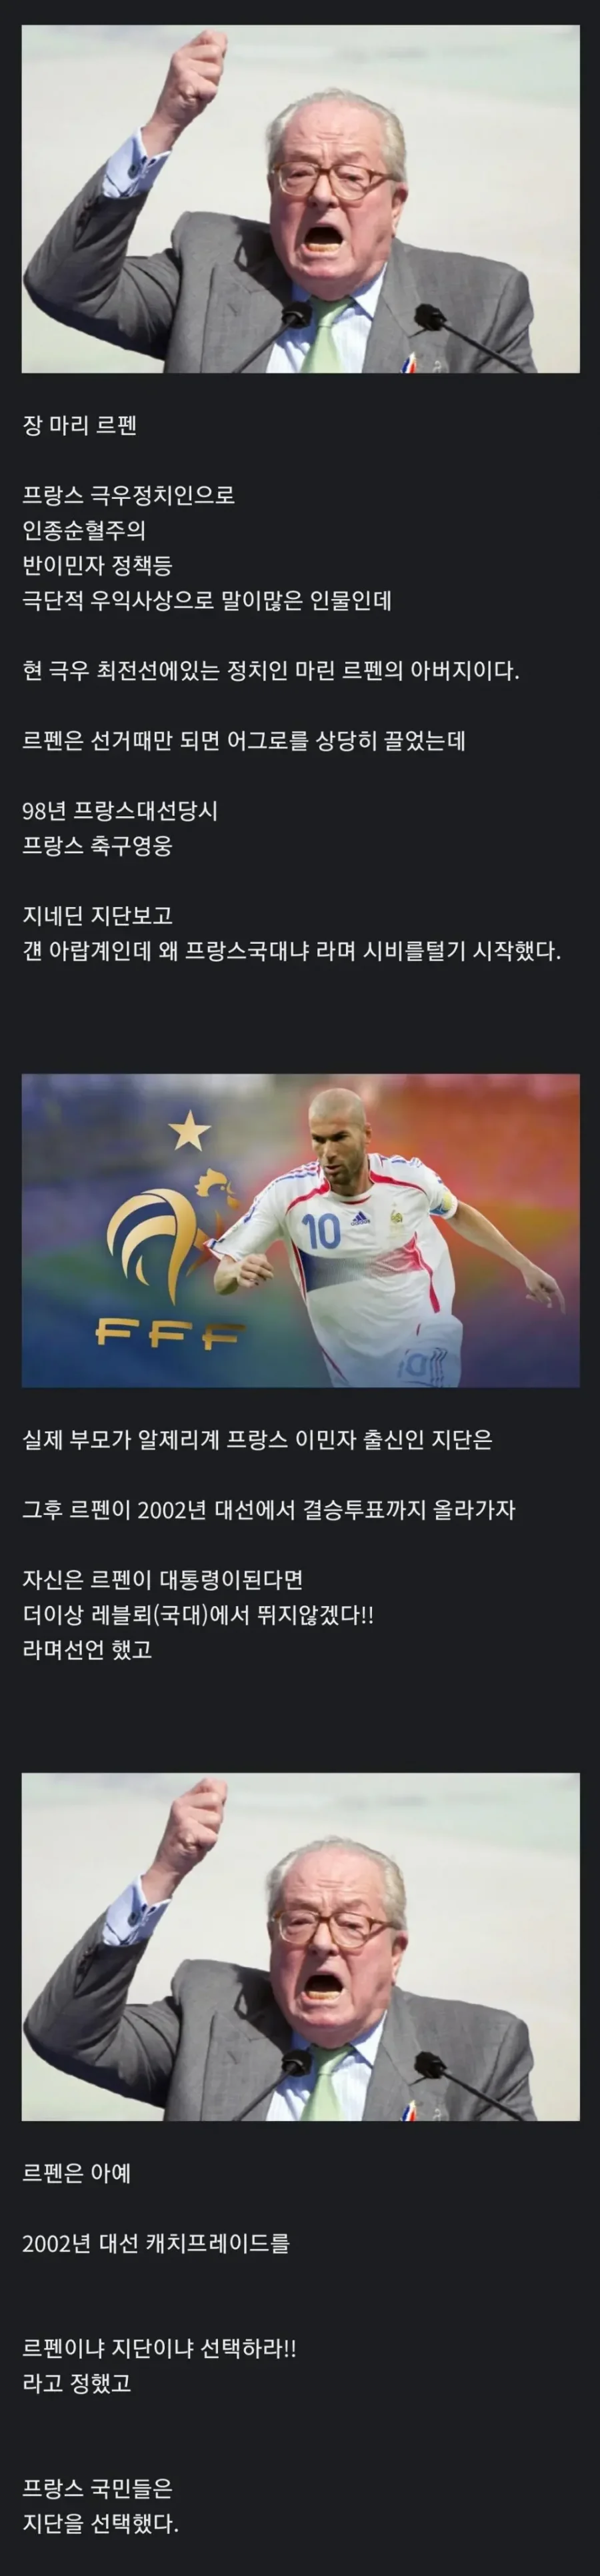 축구선수와 캐삭빵 한 정치인.jpg